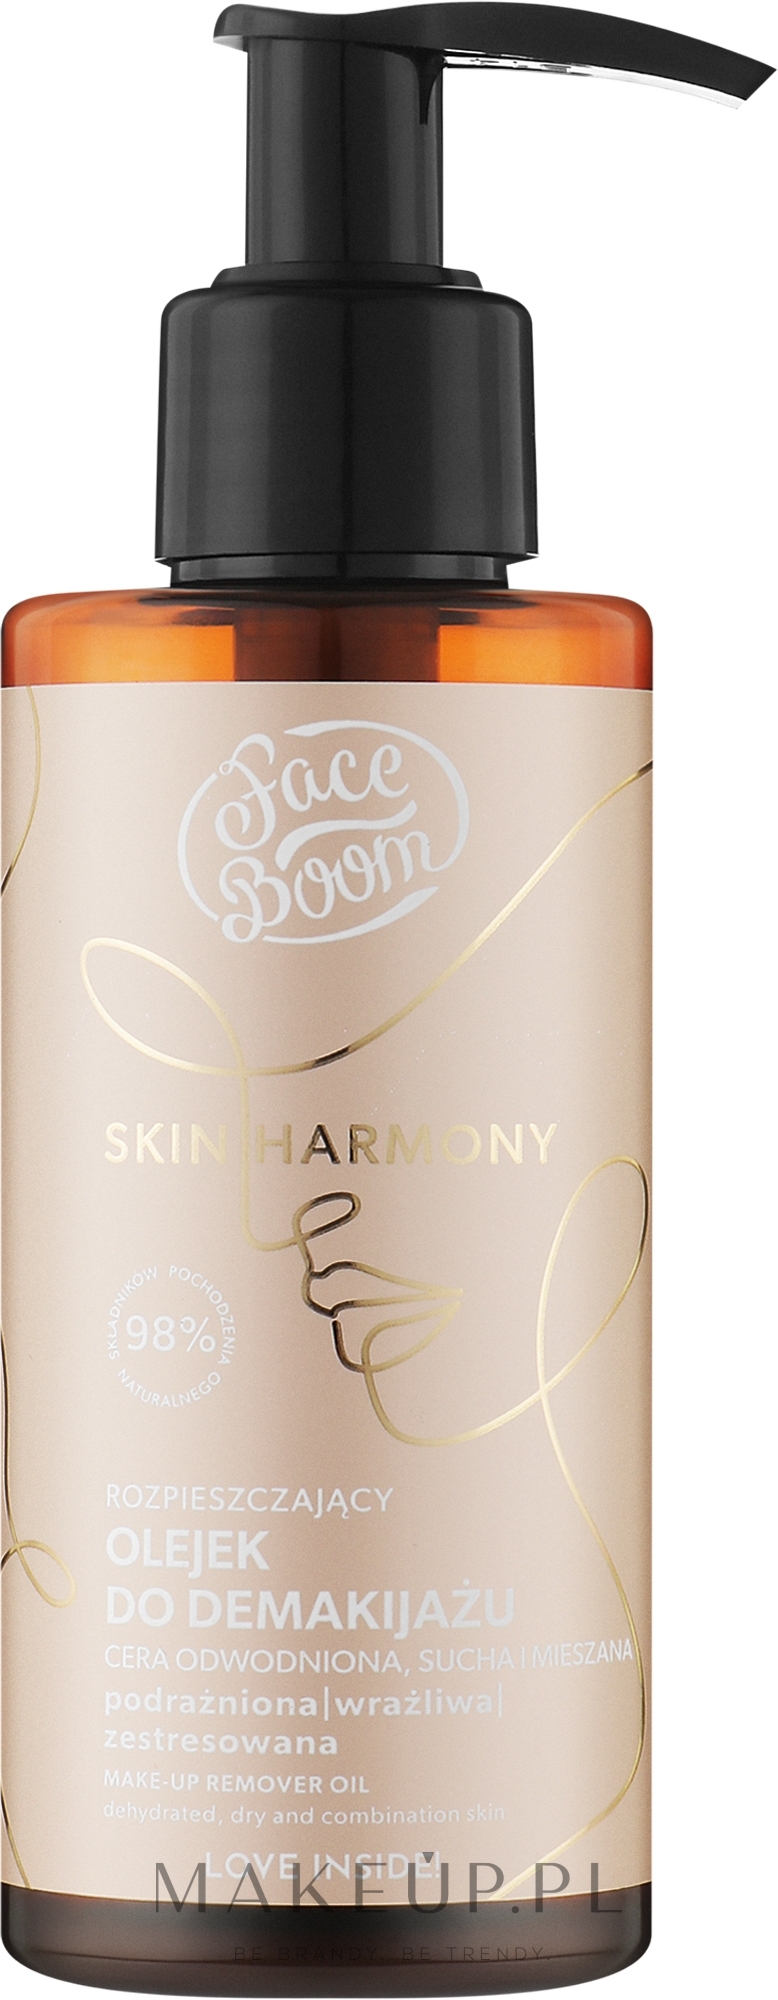 Rozpieszczający olejek do demakijażu - BodyBoom FaceBoom Skin Harmony Make-Up Remover Oil — Zdjęcie 130 ml